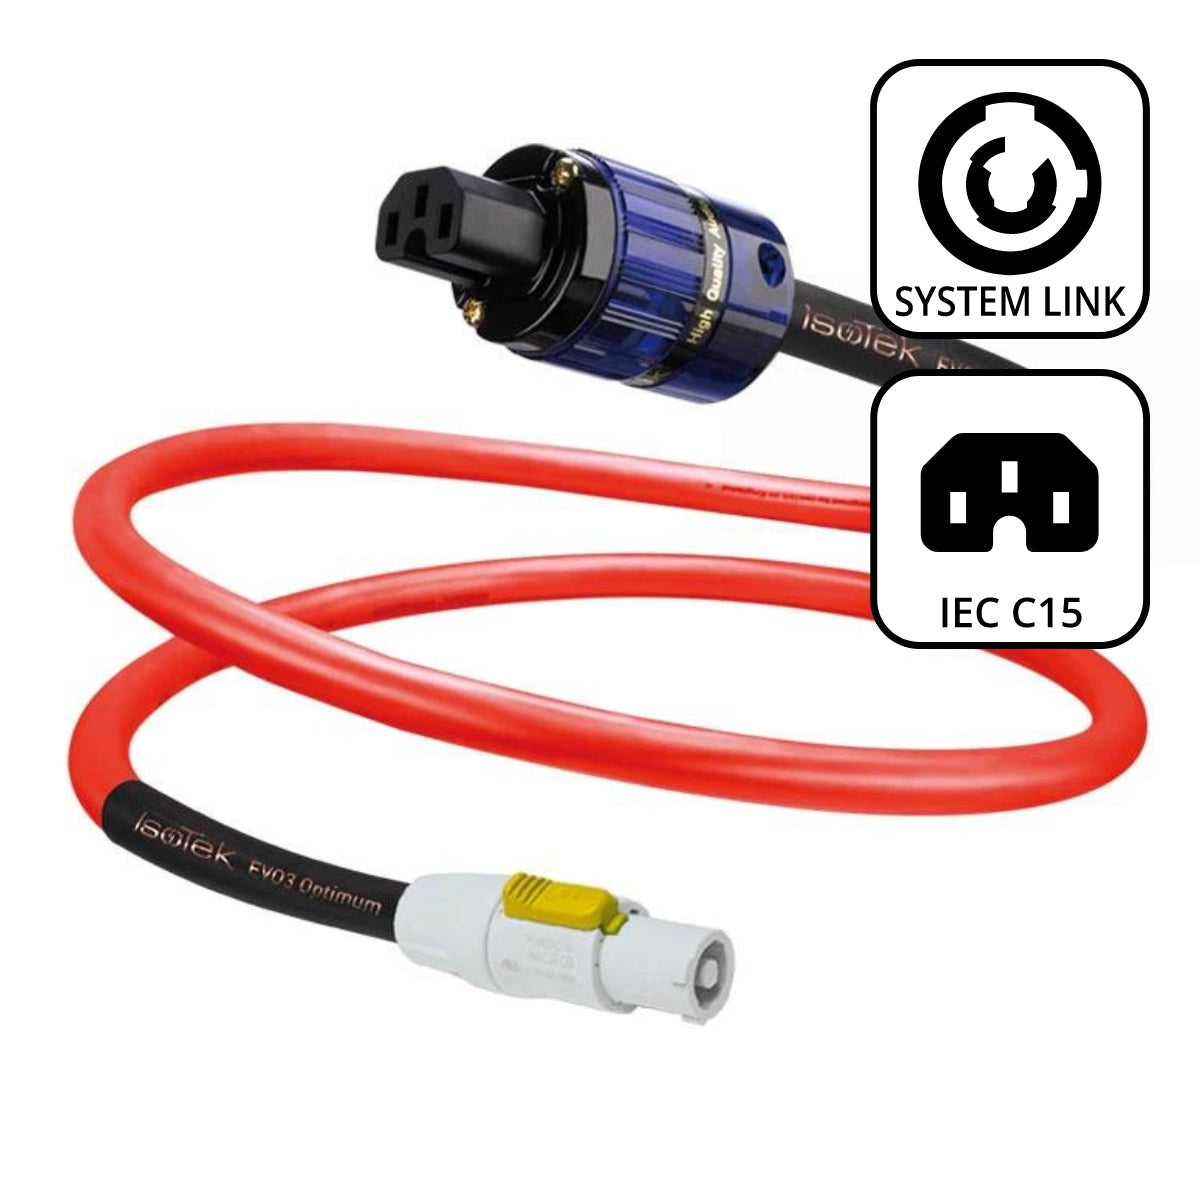 IsoTek System Link Cable